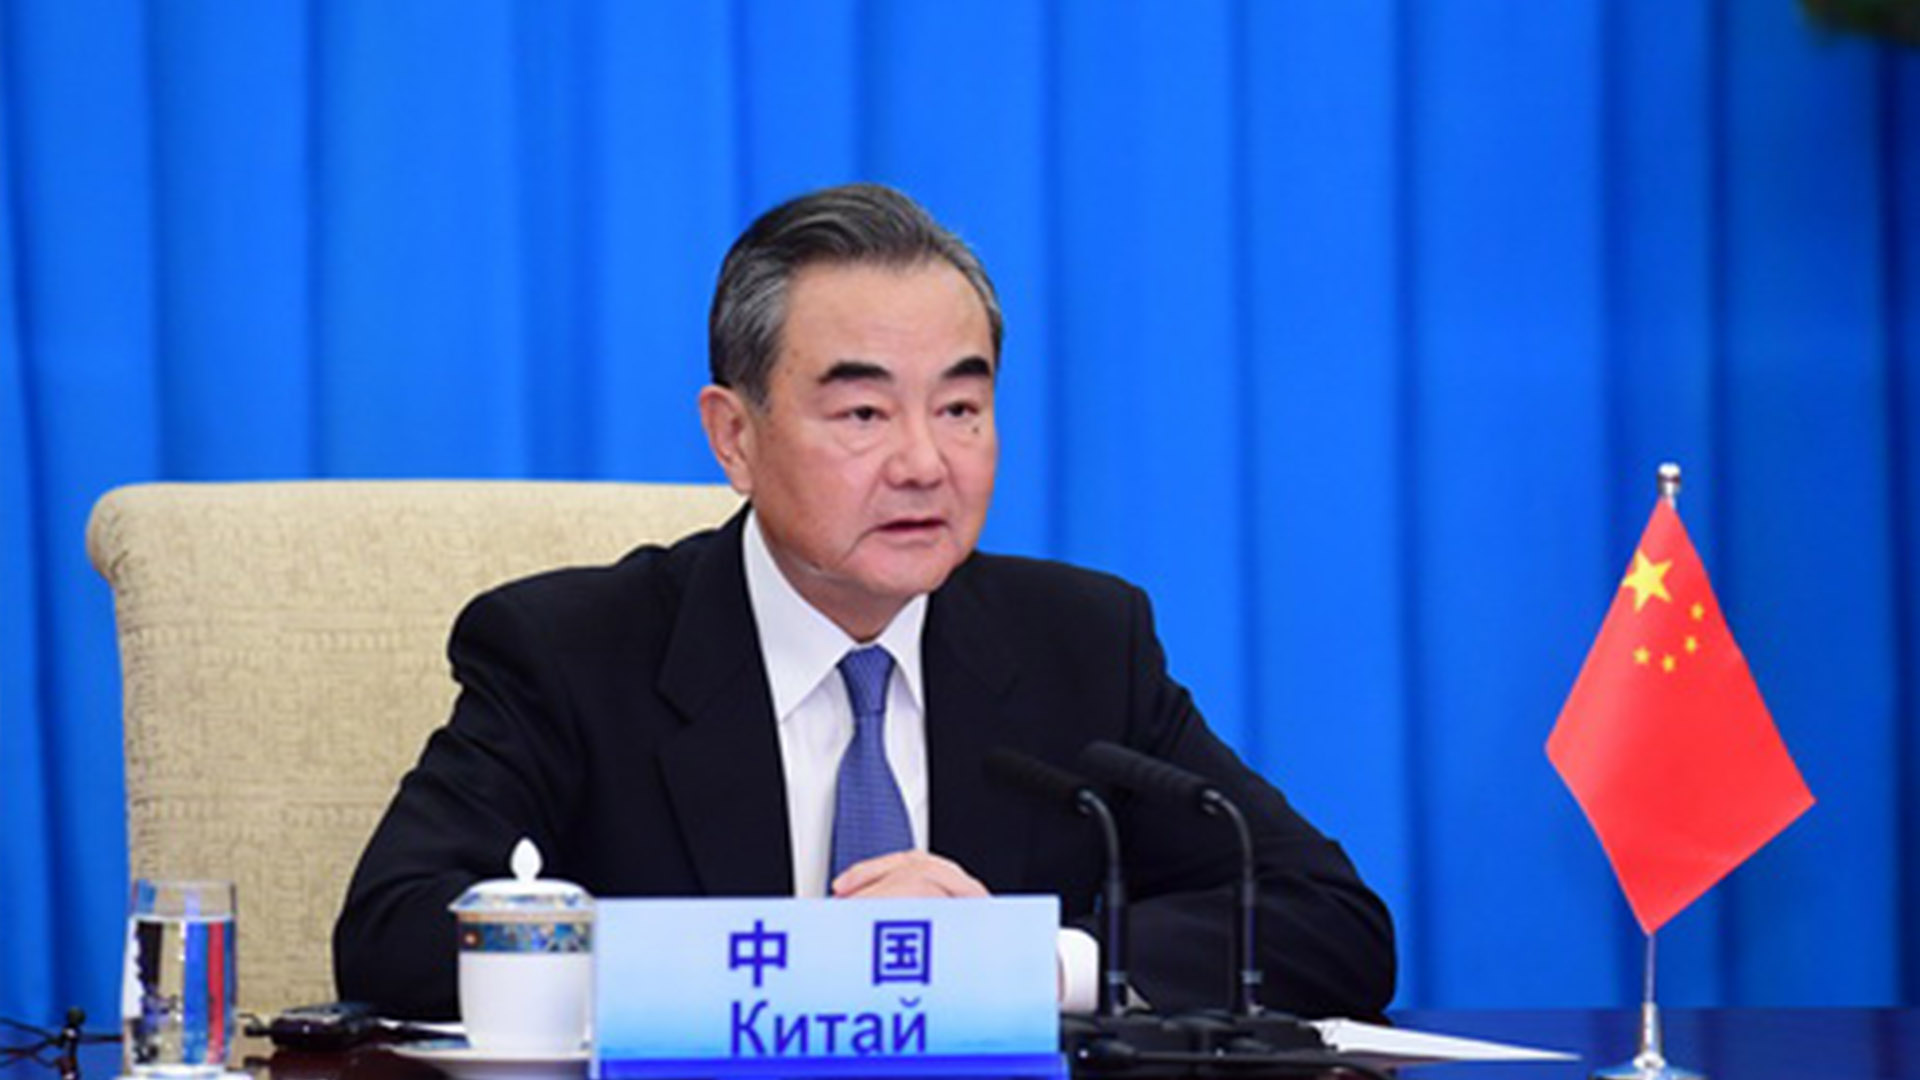 Canciller chino acusa a EU de llevar relaciones a una “nueva guerra fría”